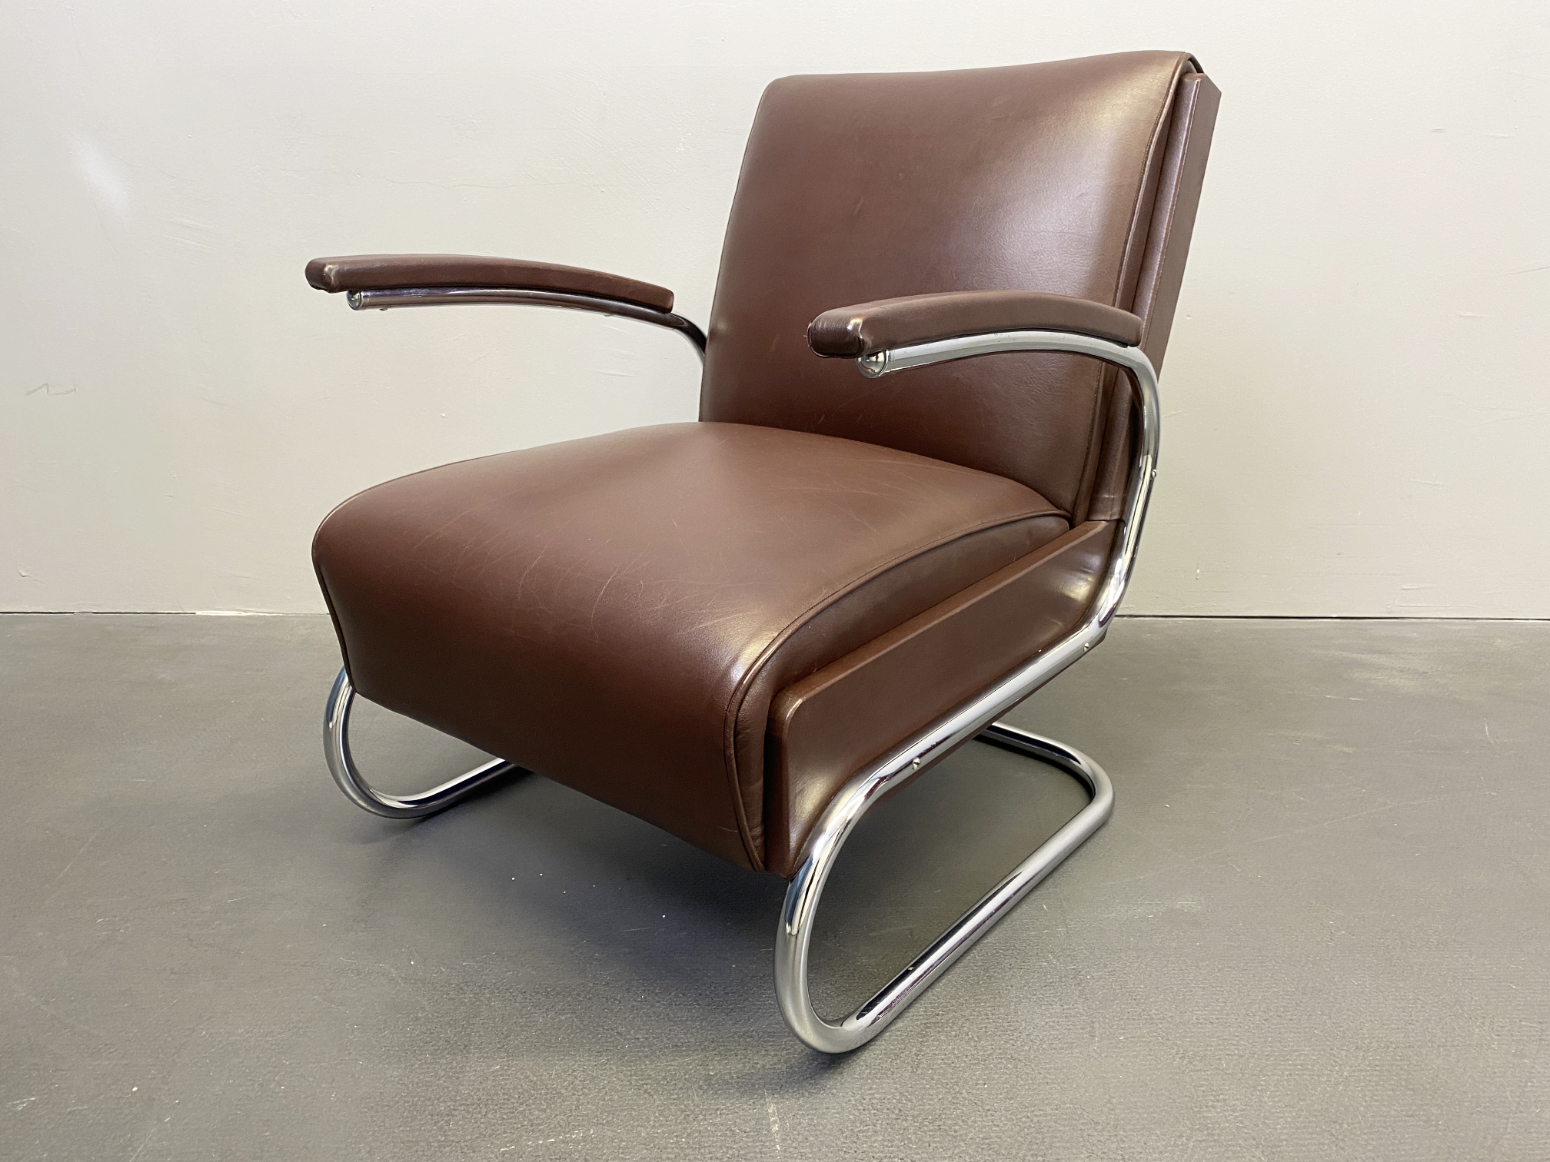 „SOLD“ Armlehnsessel / Easy -Chair / Sessel aus Stahlrohr und braunem Leder von Mücke Melder, 1930s.